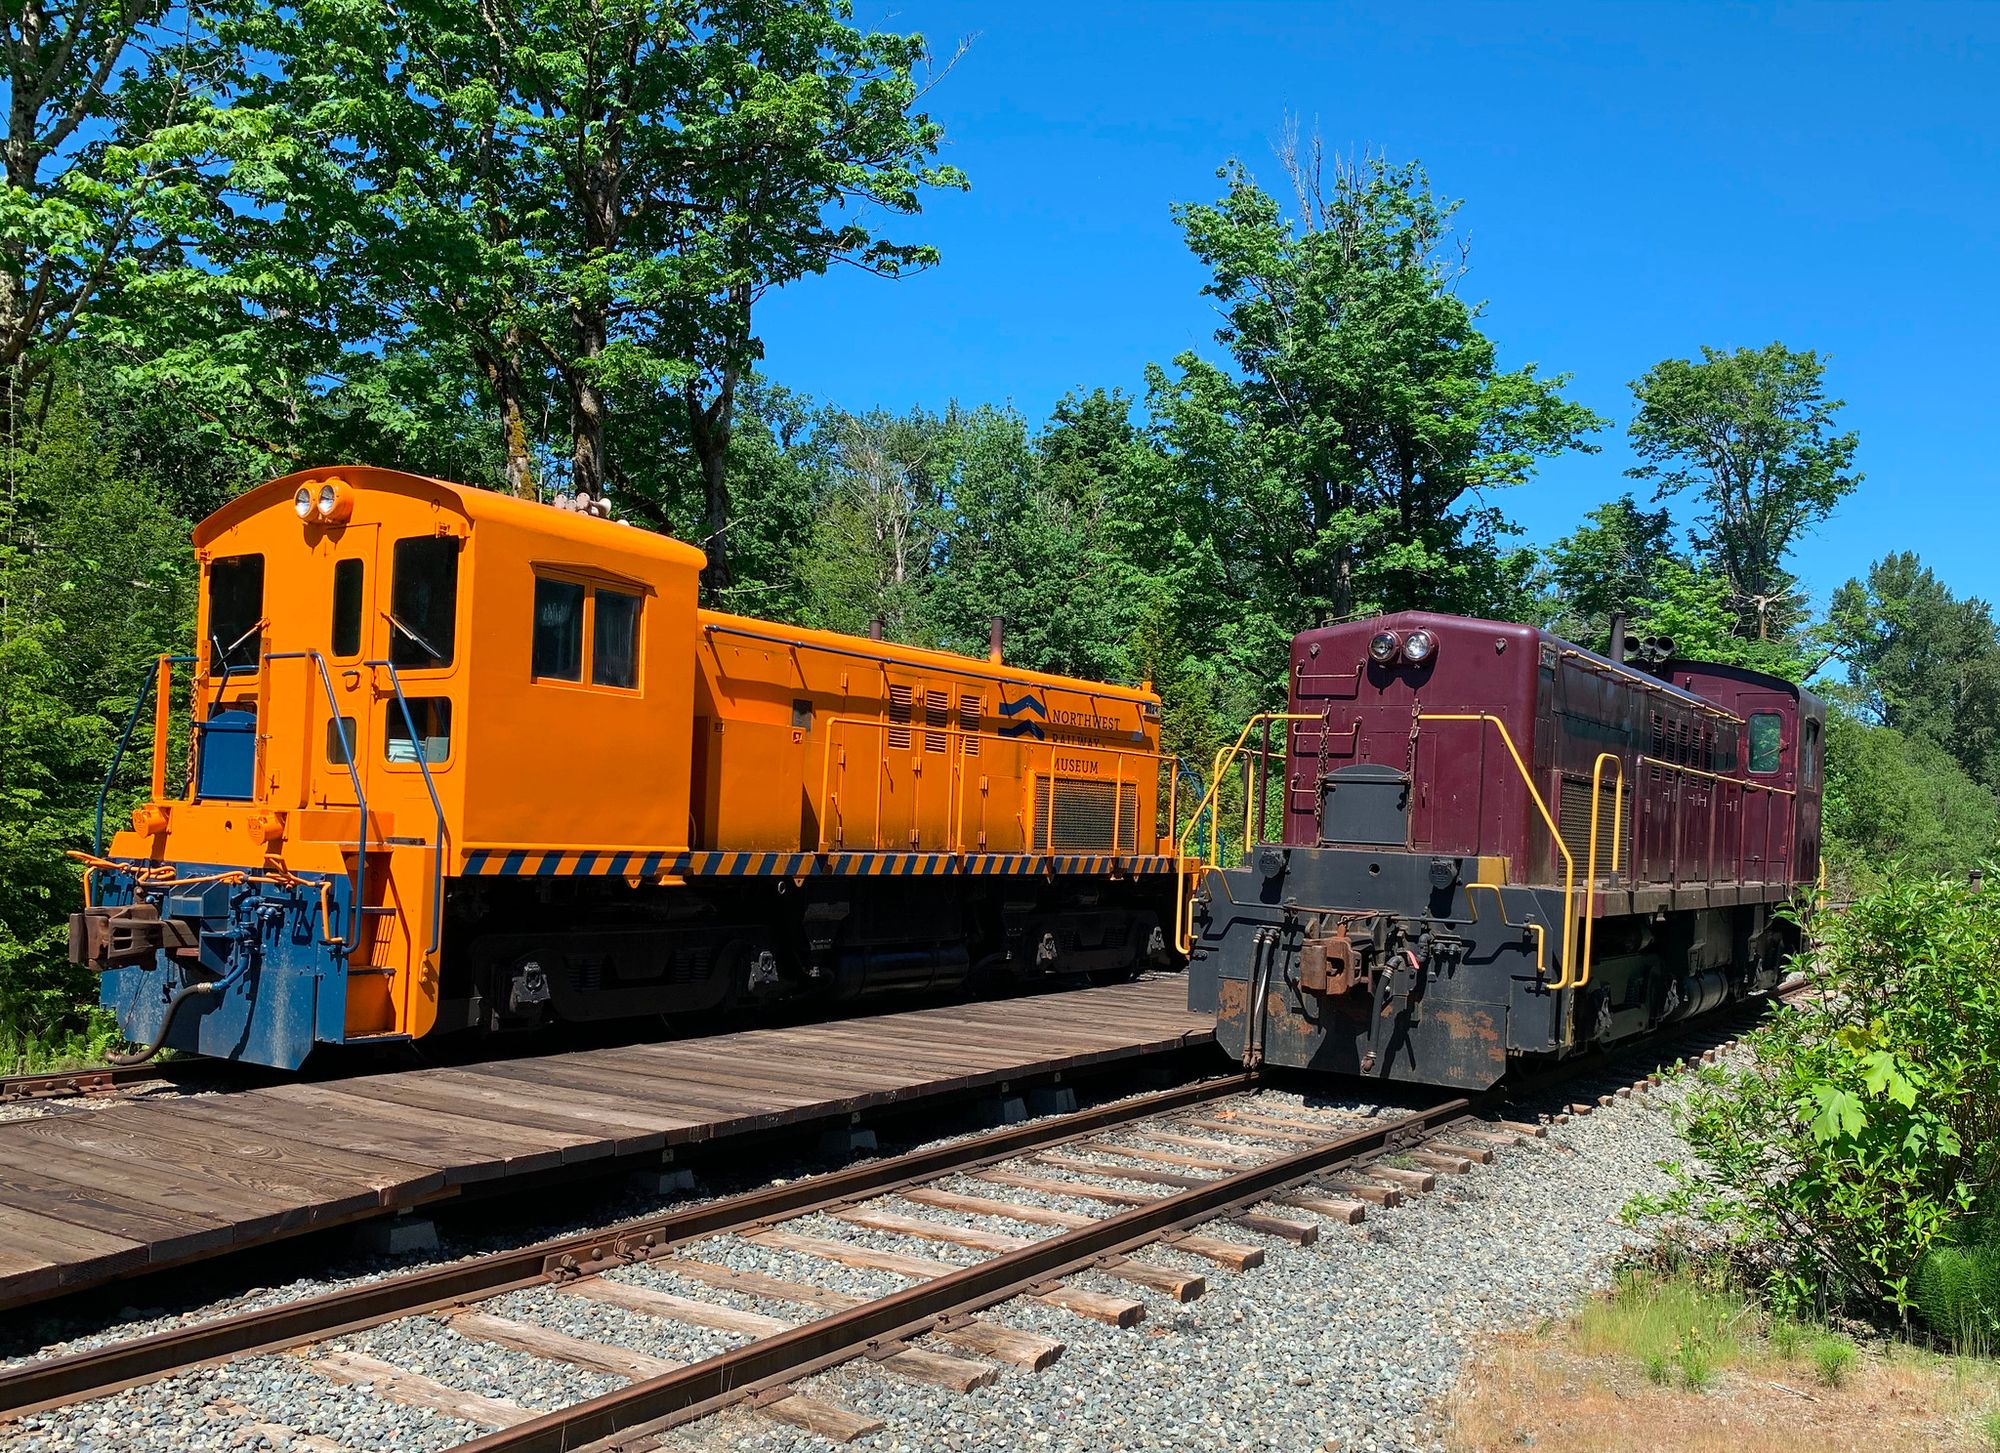 Washington Heritage Railroads